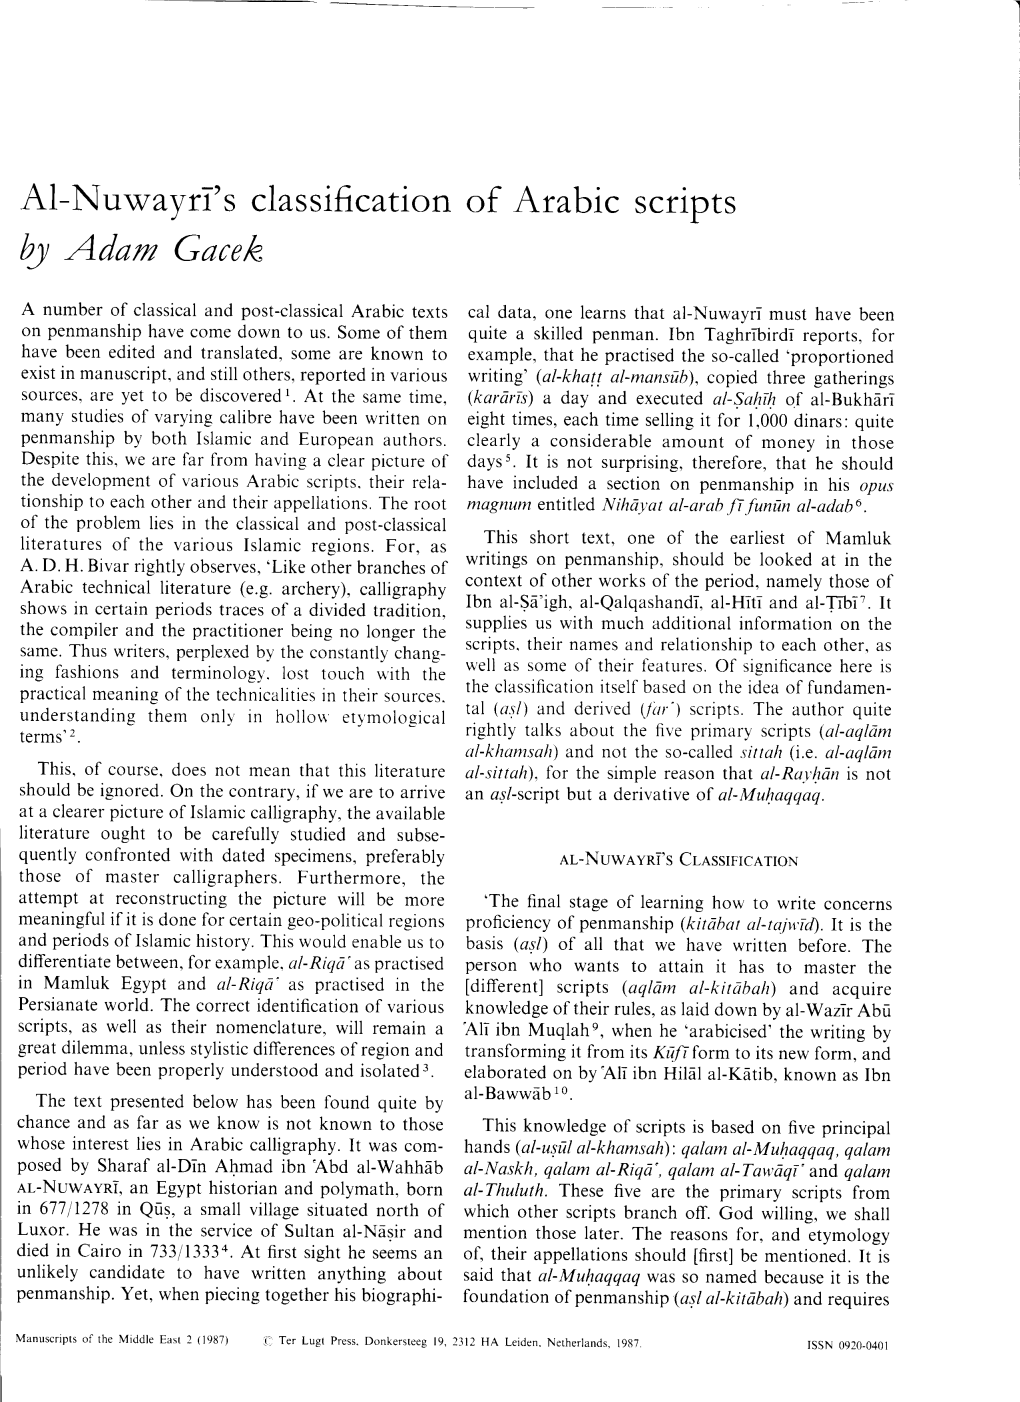 Al-Nuwayn's Classification of Arabic Scripts @ Adam Gacek